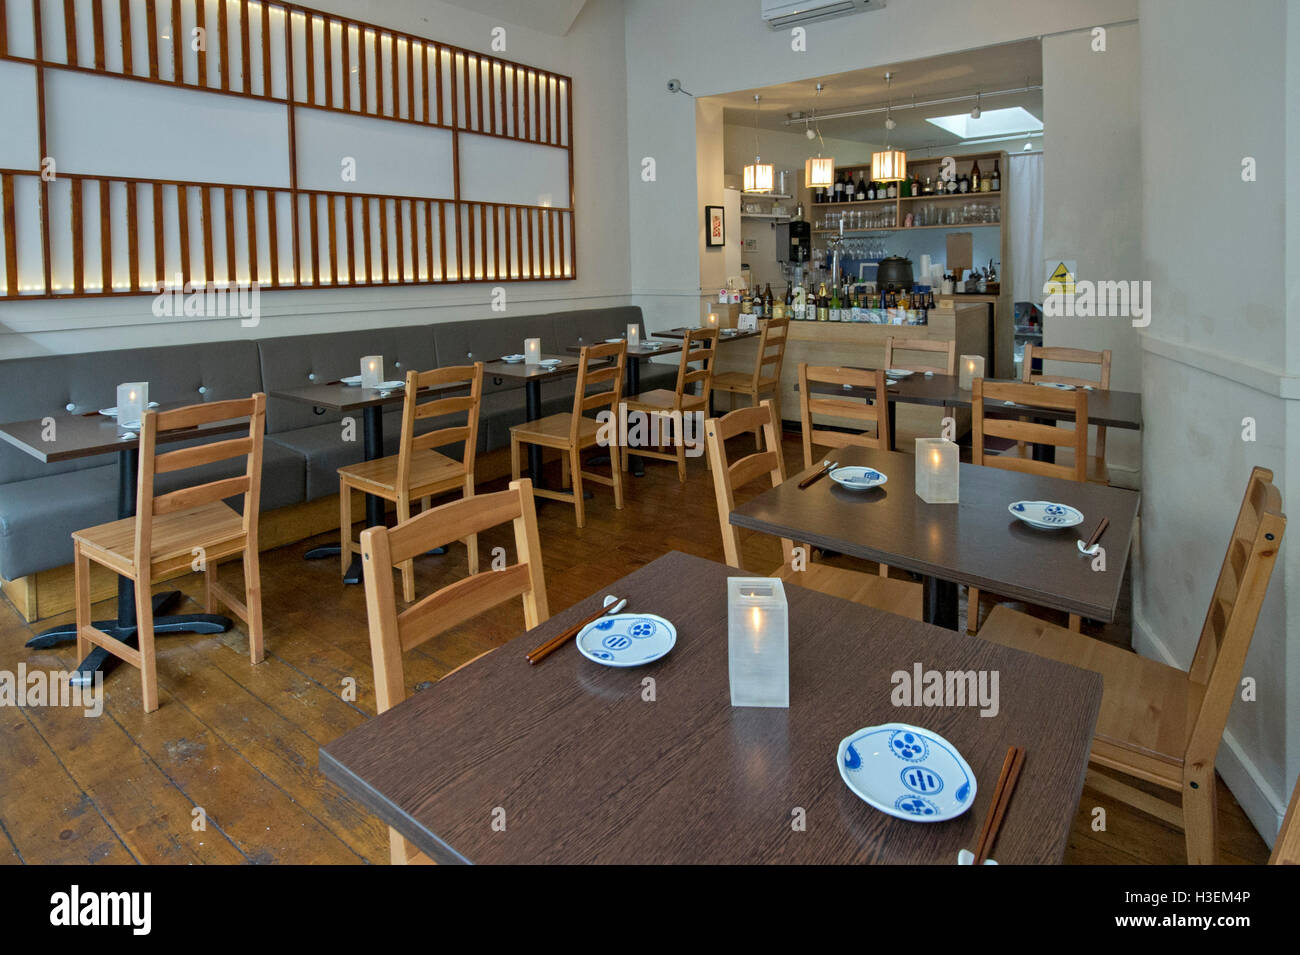 Yume japanisches Restaurant, Cotham, Bristol, UK. Küche Lebensmittel Japan orientalische Stockfoto